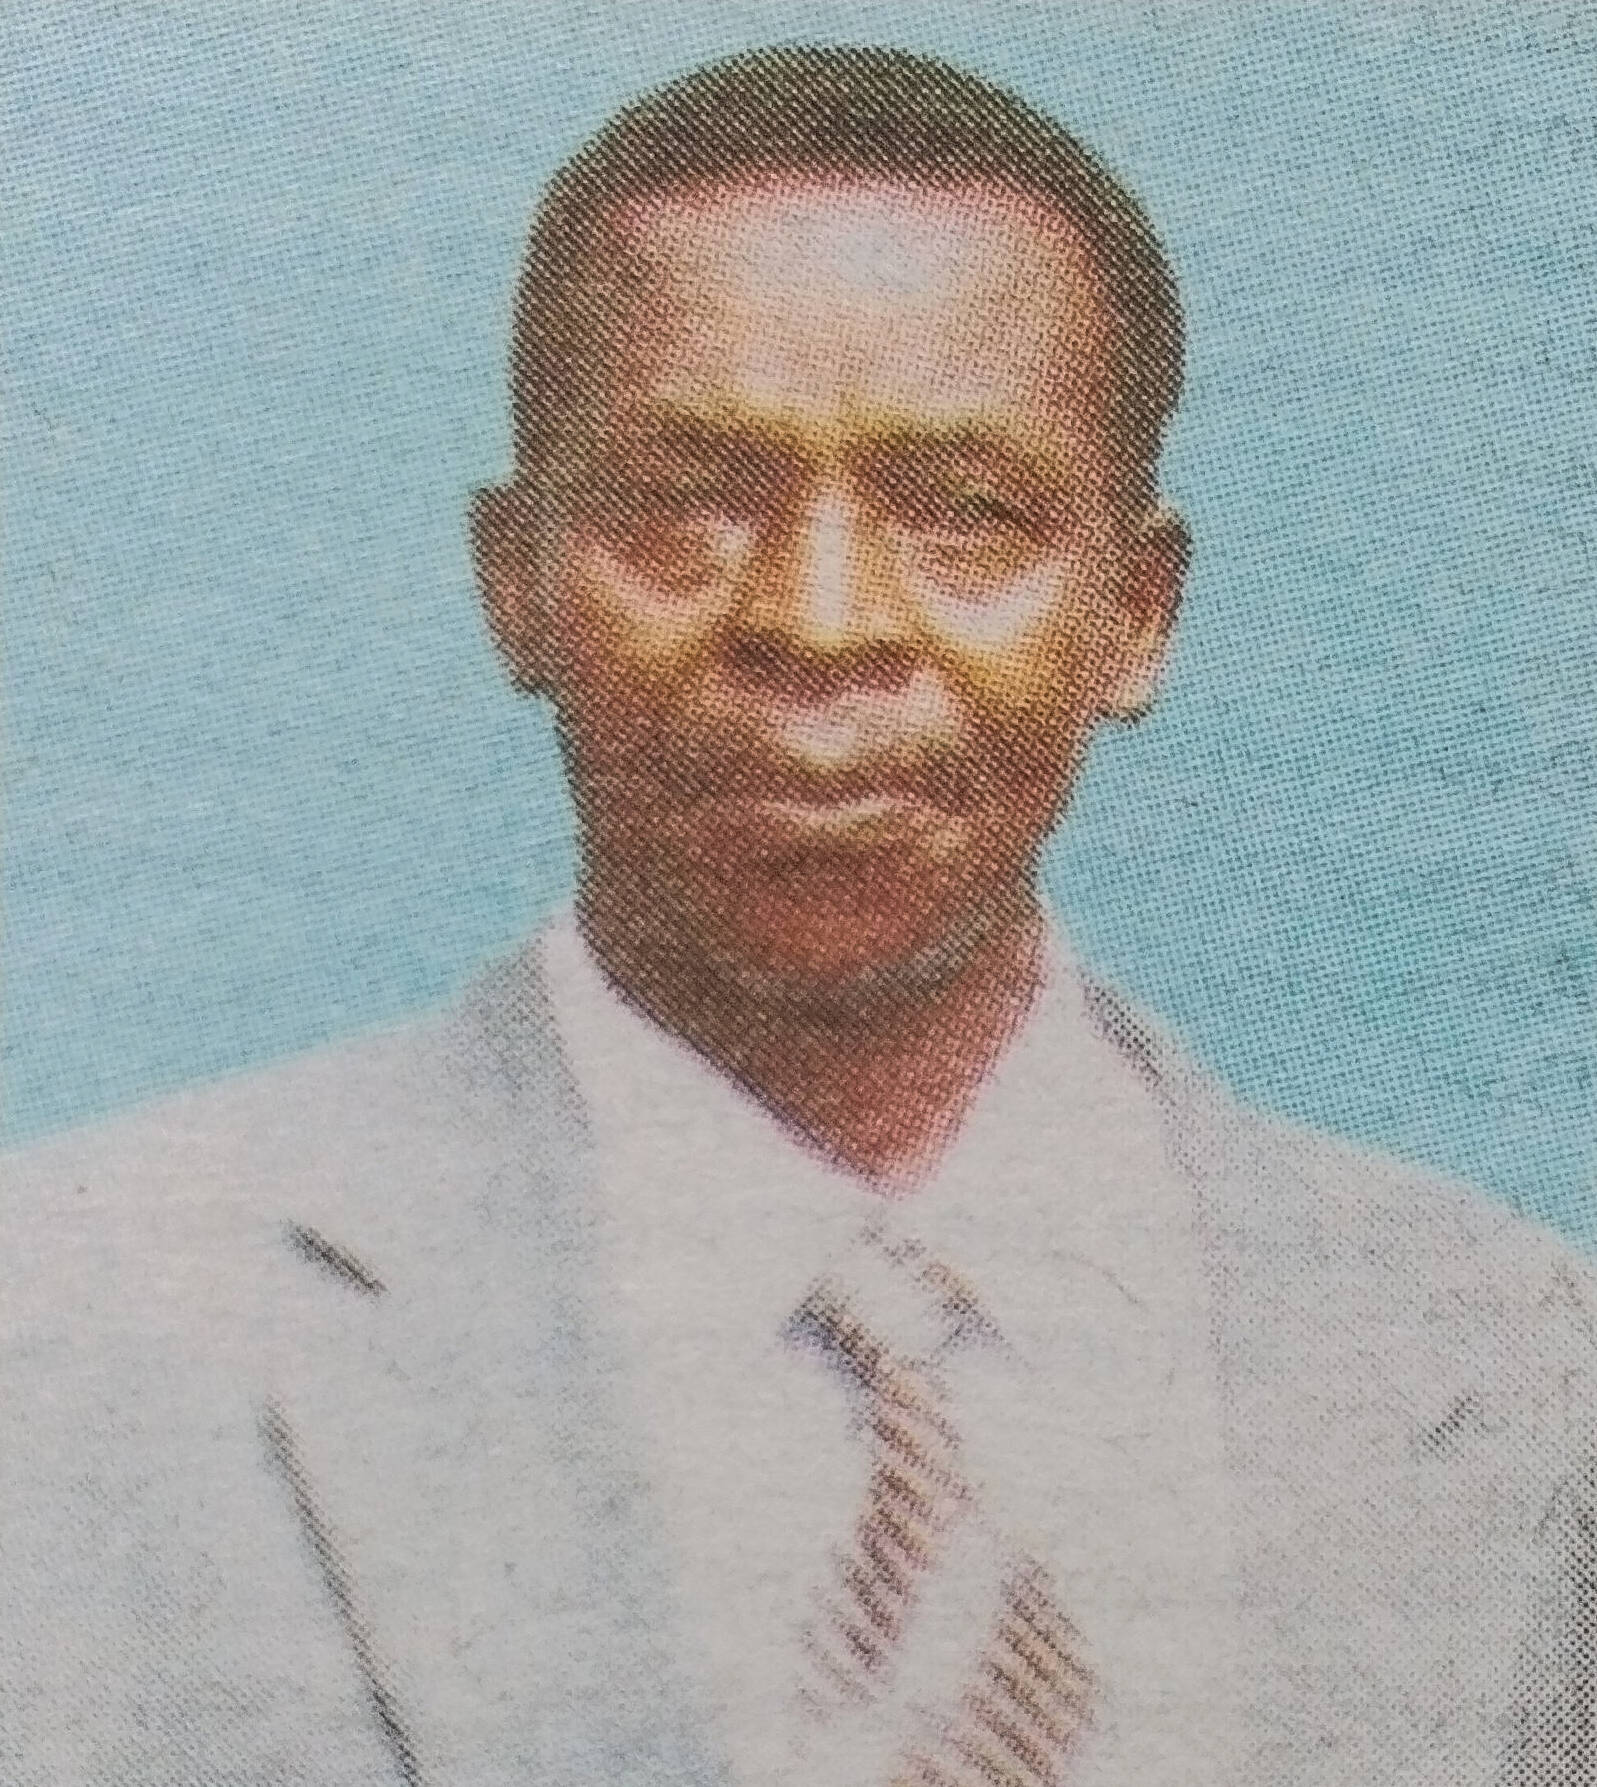 Obituary Image of Elder Evangelist Zachary Kiburi Ndura